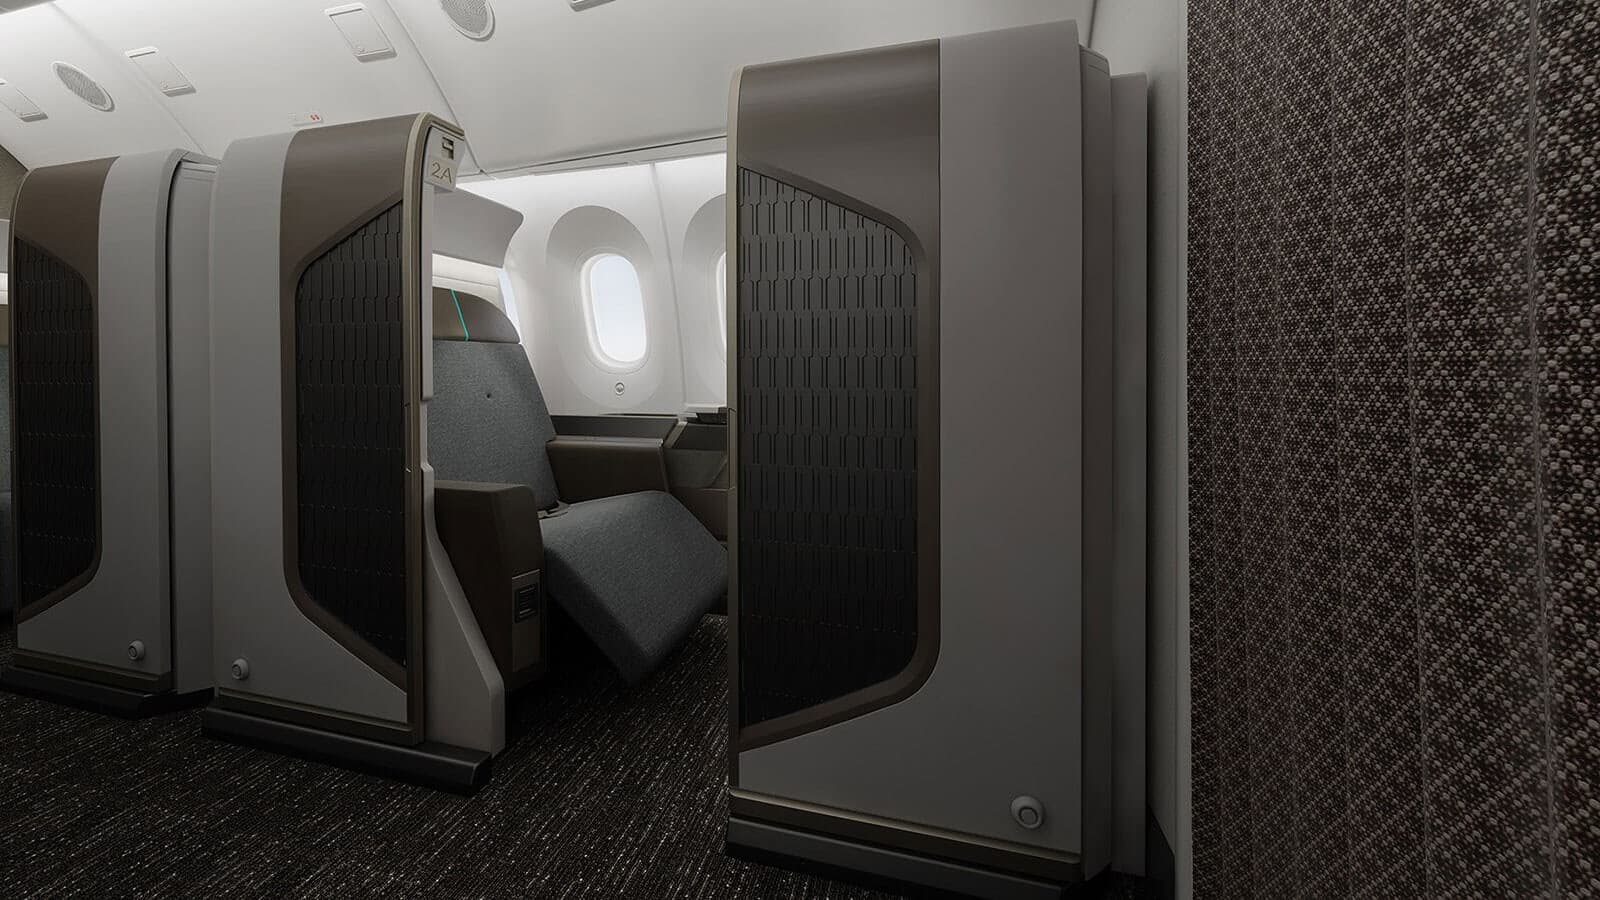 787 First Class suite in grey and brown tones with door open